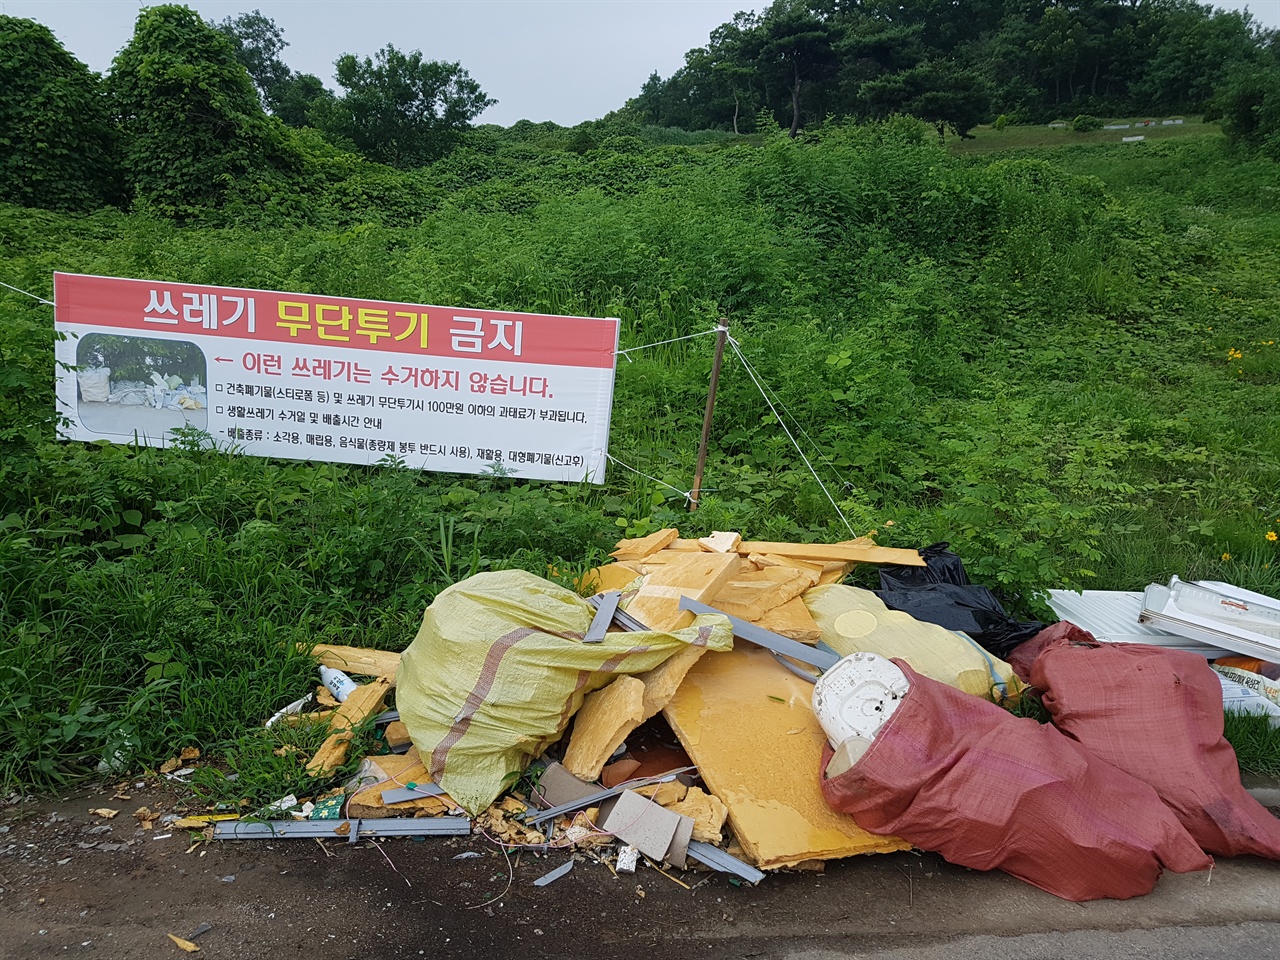 '쓰레기 무단투기 금지' 현수막이 걸렸습니다. 이에 아랑곳하지 않고 쓰레기를 무더기로 버렸습니다.